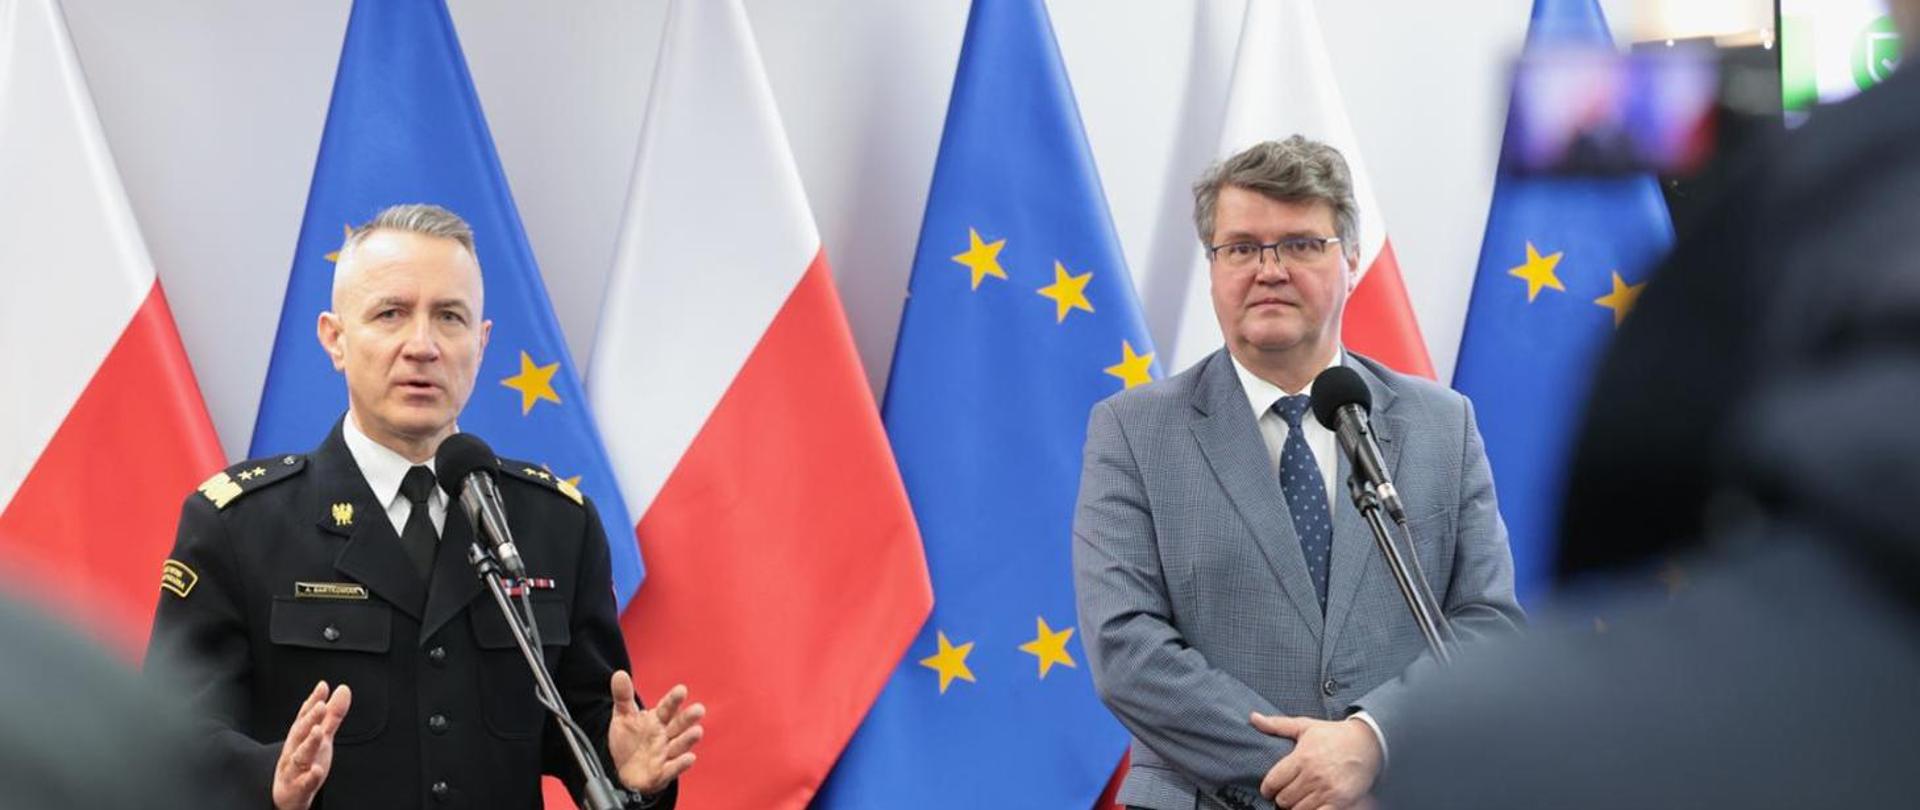 wiceminister Maciej Wąsik na konferencji z gen. brygadierem Andrzejem Bartkowiakiem, w tle flagi Polski oraz Unii Europejskiej